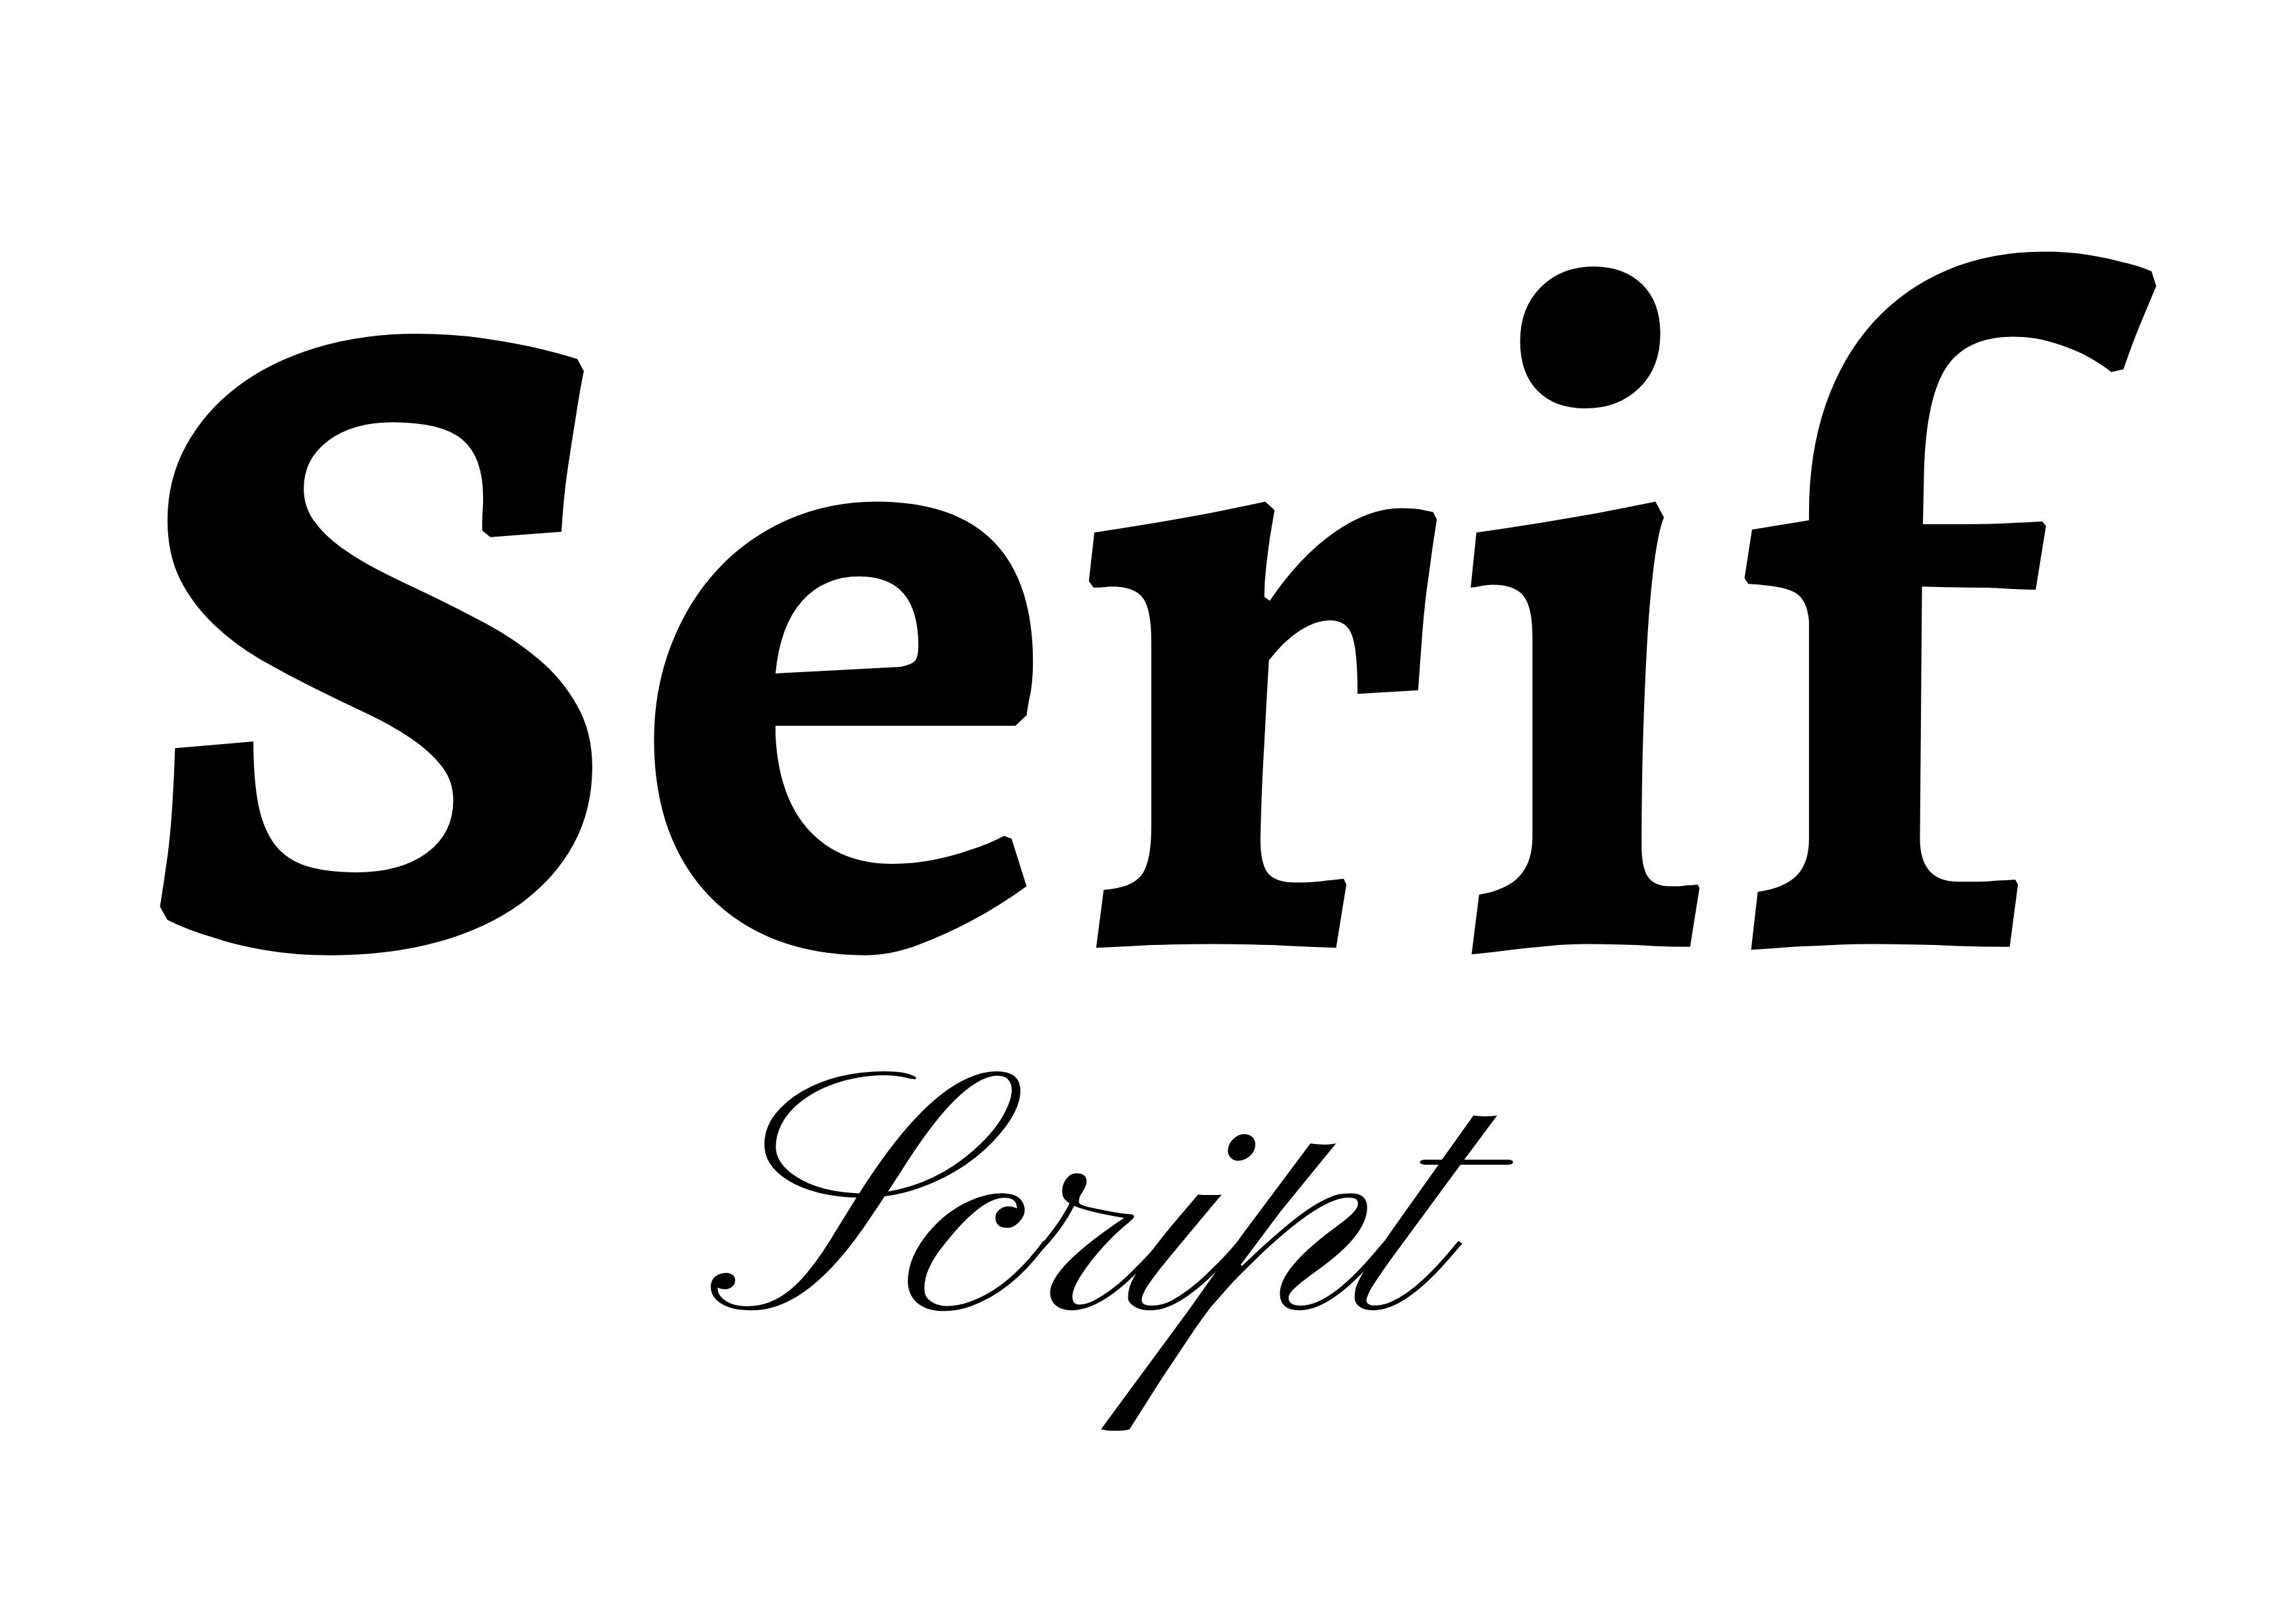 Emparelhamento de Fontes - 'Serif' em Negrito Preto no centro com 'Script' em preto abaixo, menor - O guia completo para fontes: 5 tipos essenciais de fontes em tipografia - Imagem